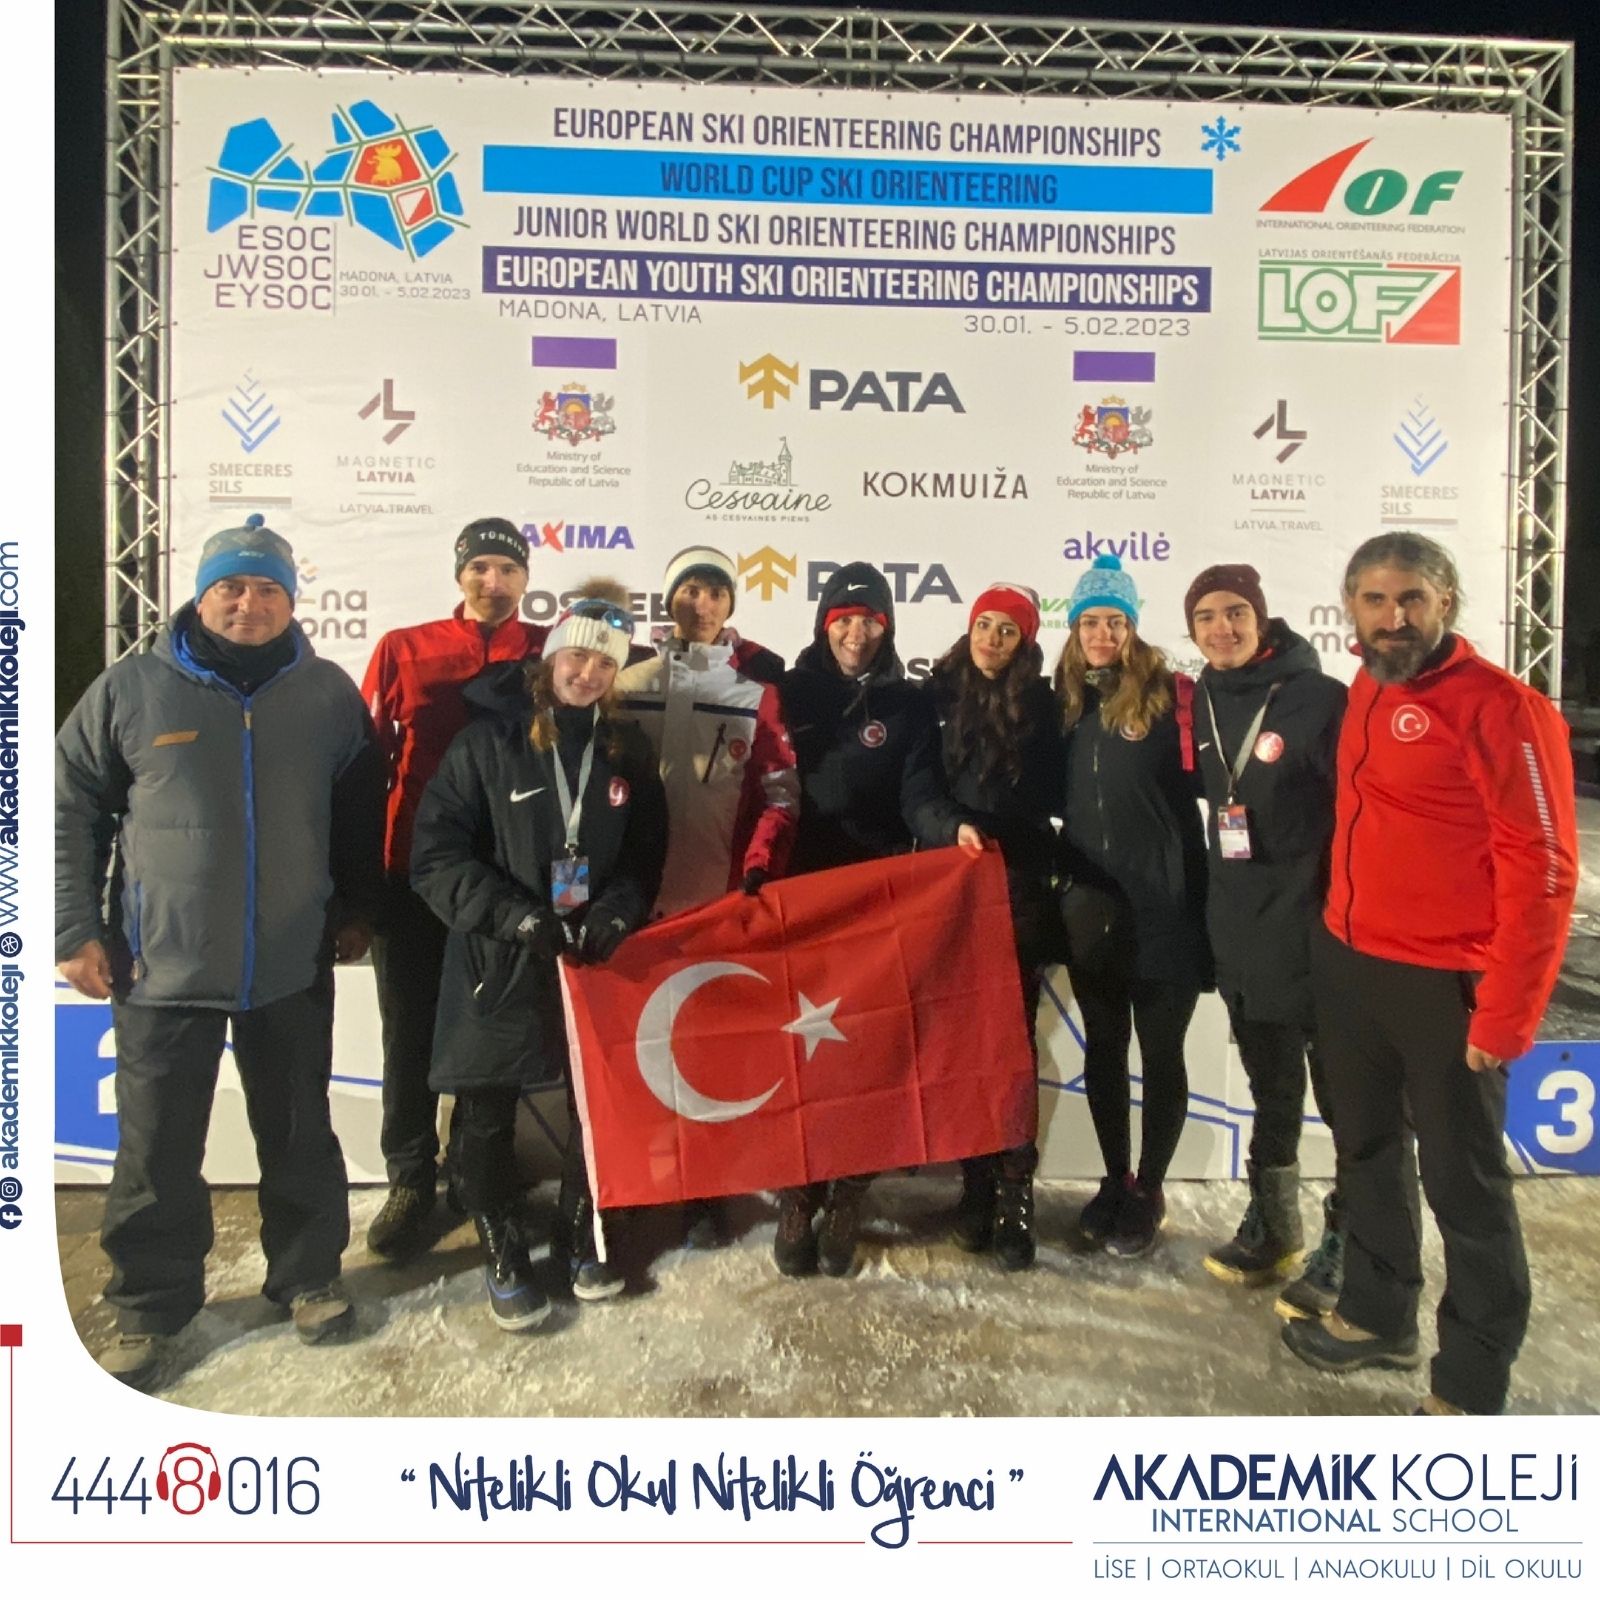 Akademik Koleji Öğrencisi Yaşar Eren Demir Letonya'da Düzenlenen Kayakla Oryantiring Şampiyonası'nda Ülkemizi Temsil Edecek